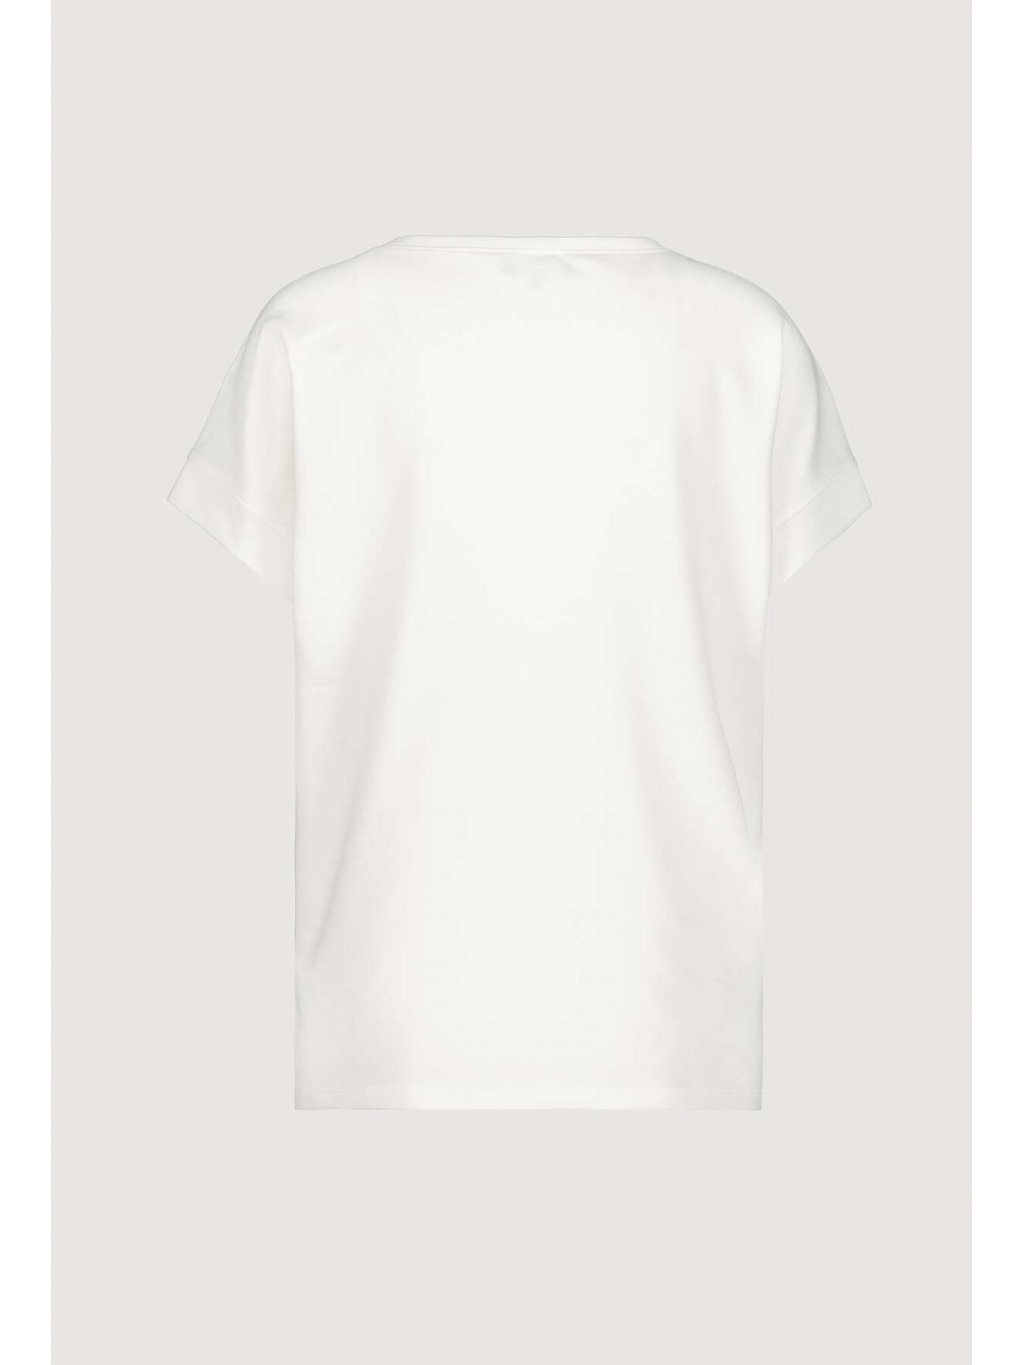 Tričko Monari 6655 jemně bílé s nápisy